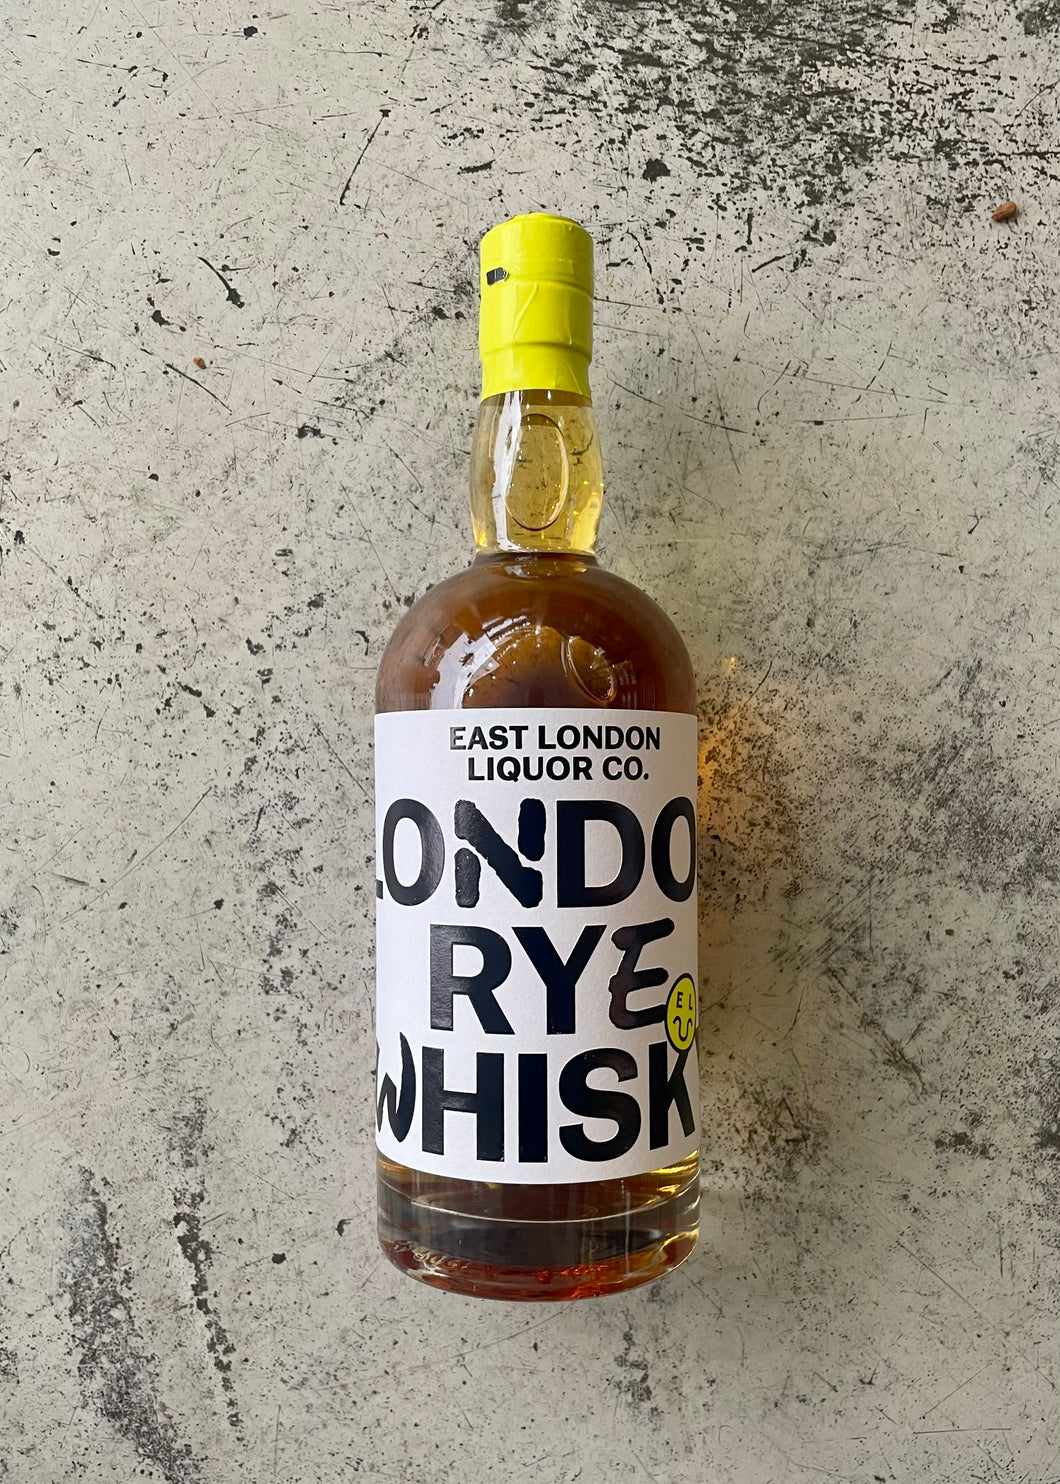 East London Liquor Co. Rye Whisky 47% (700ml)